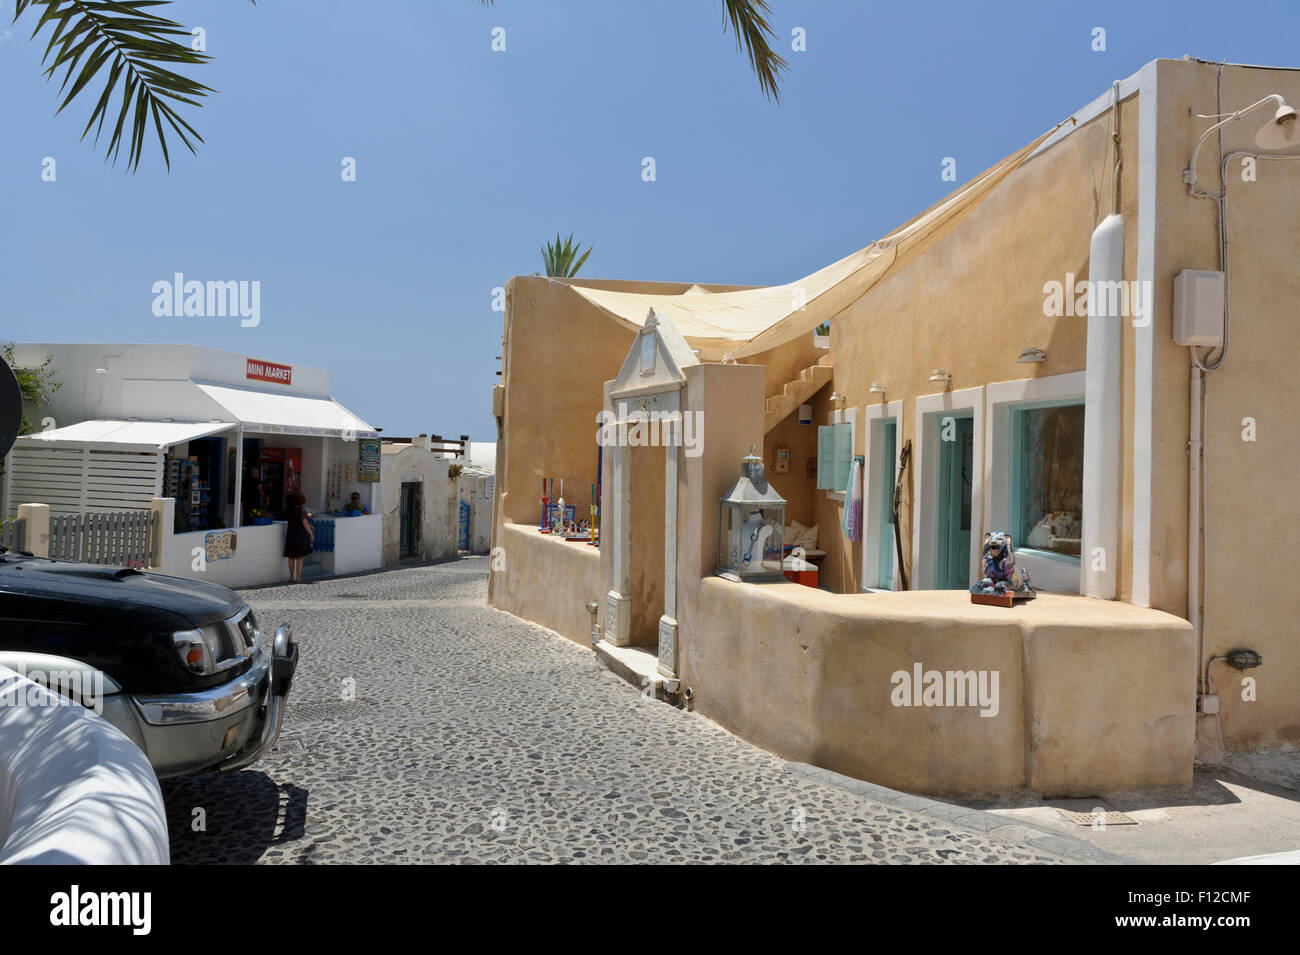 Un petit magasin dans une rue pavée dans le village de Firostefani, à Santorin, en Grèce. Banque D'Images